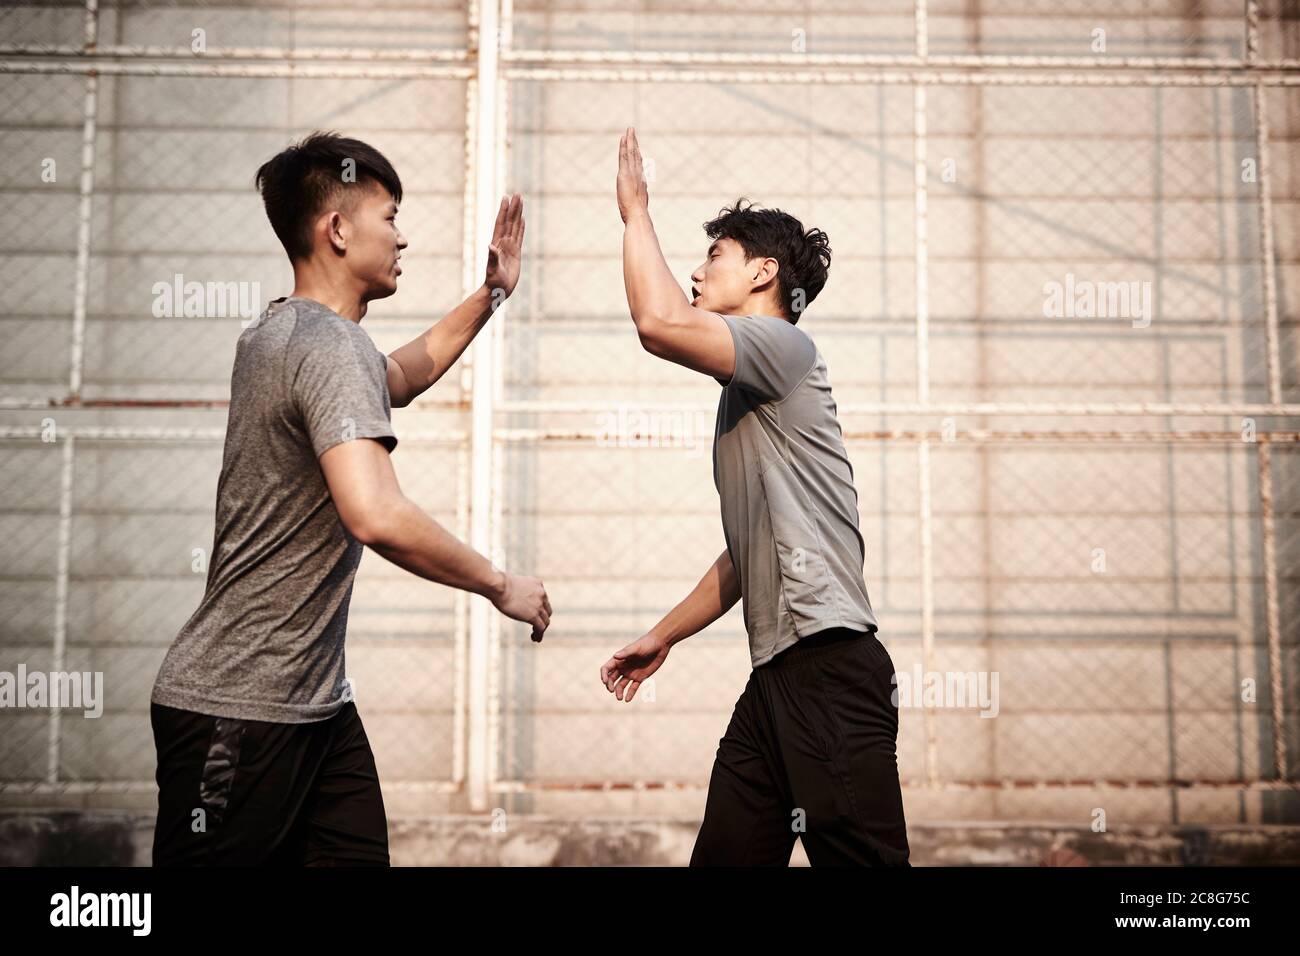 Zwei junge asiatische Athleten hallo-five feiern Erfolg Stockfoto